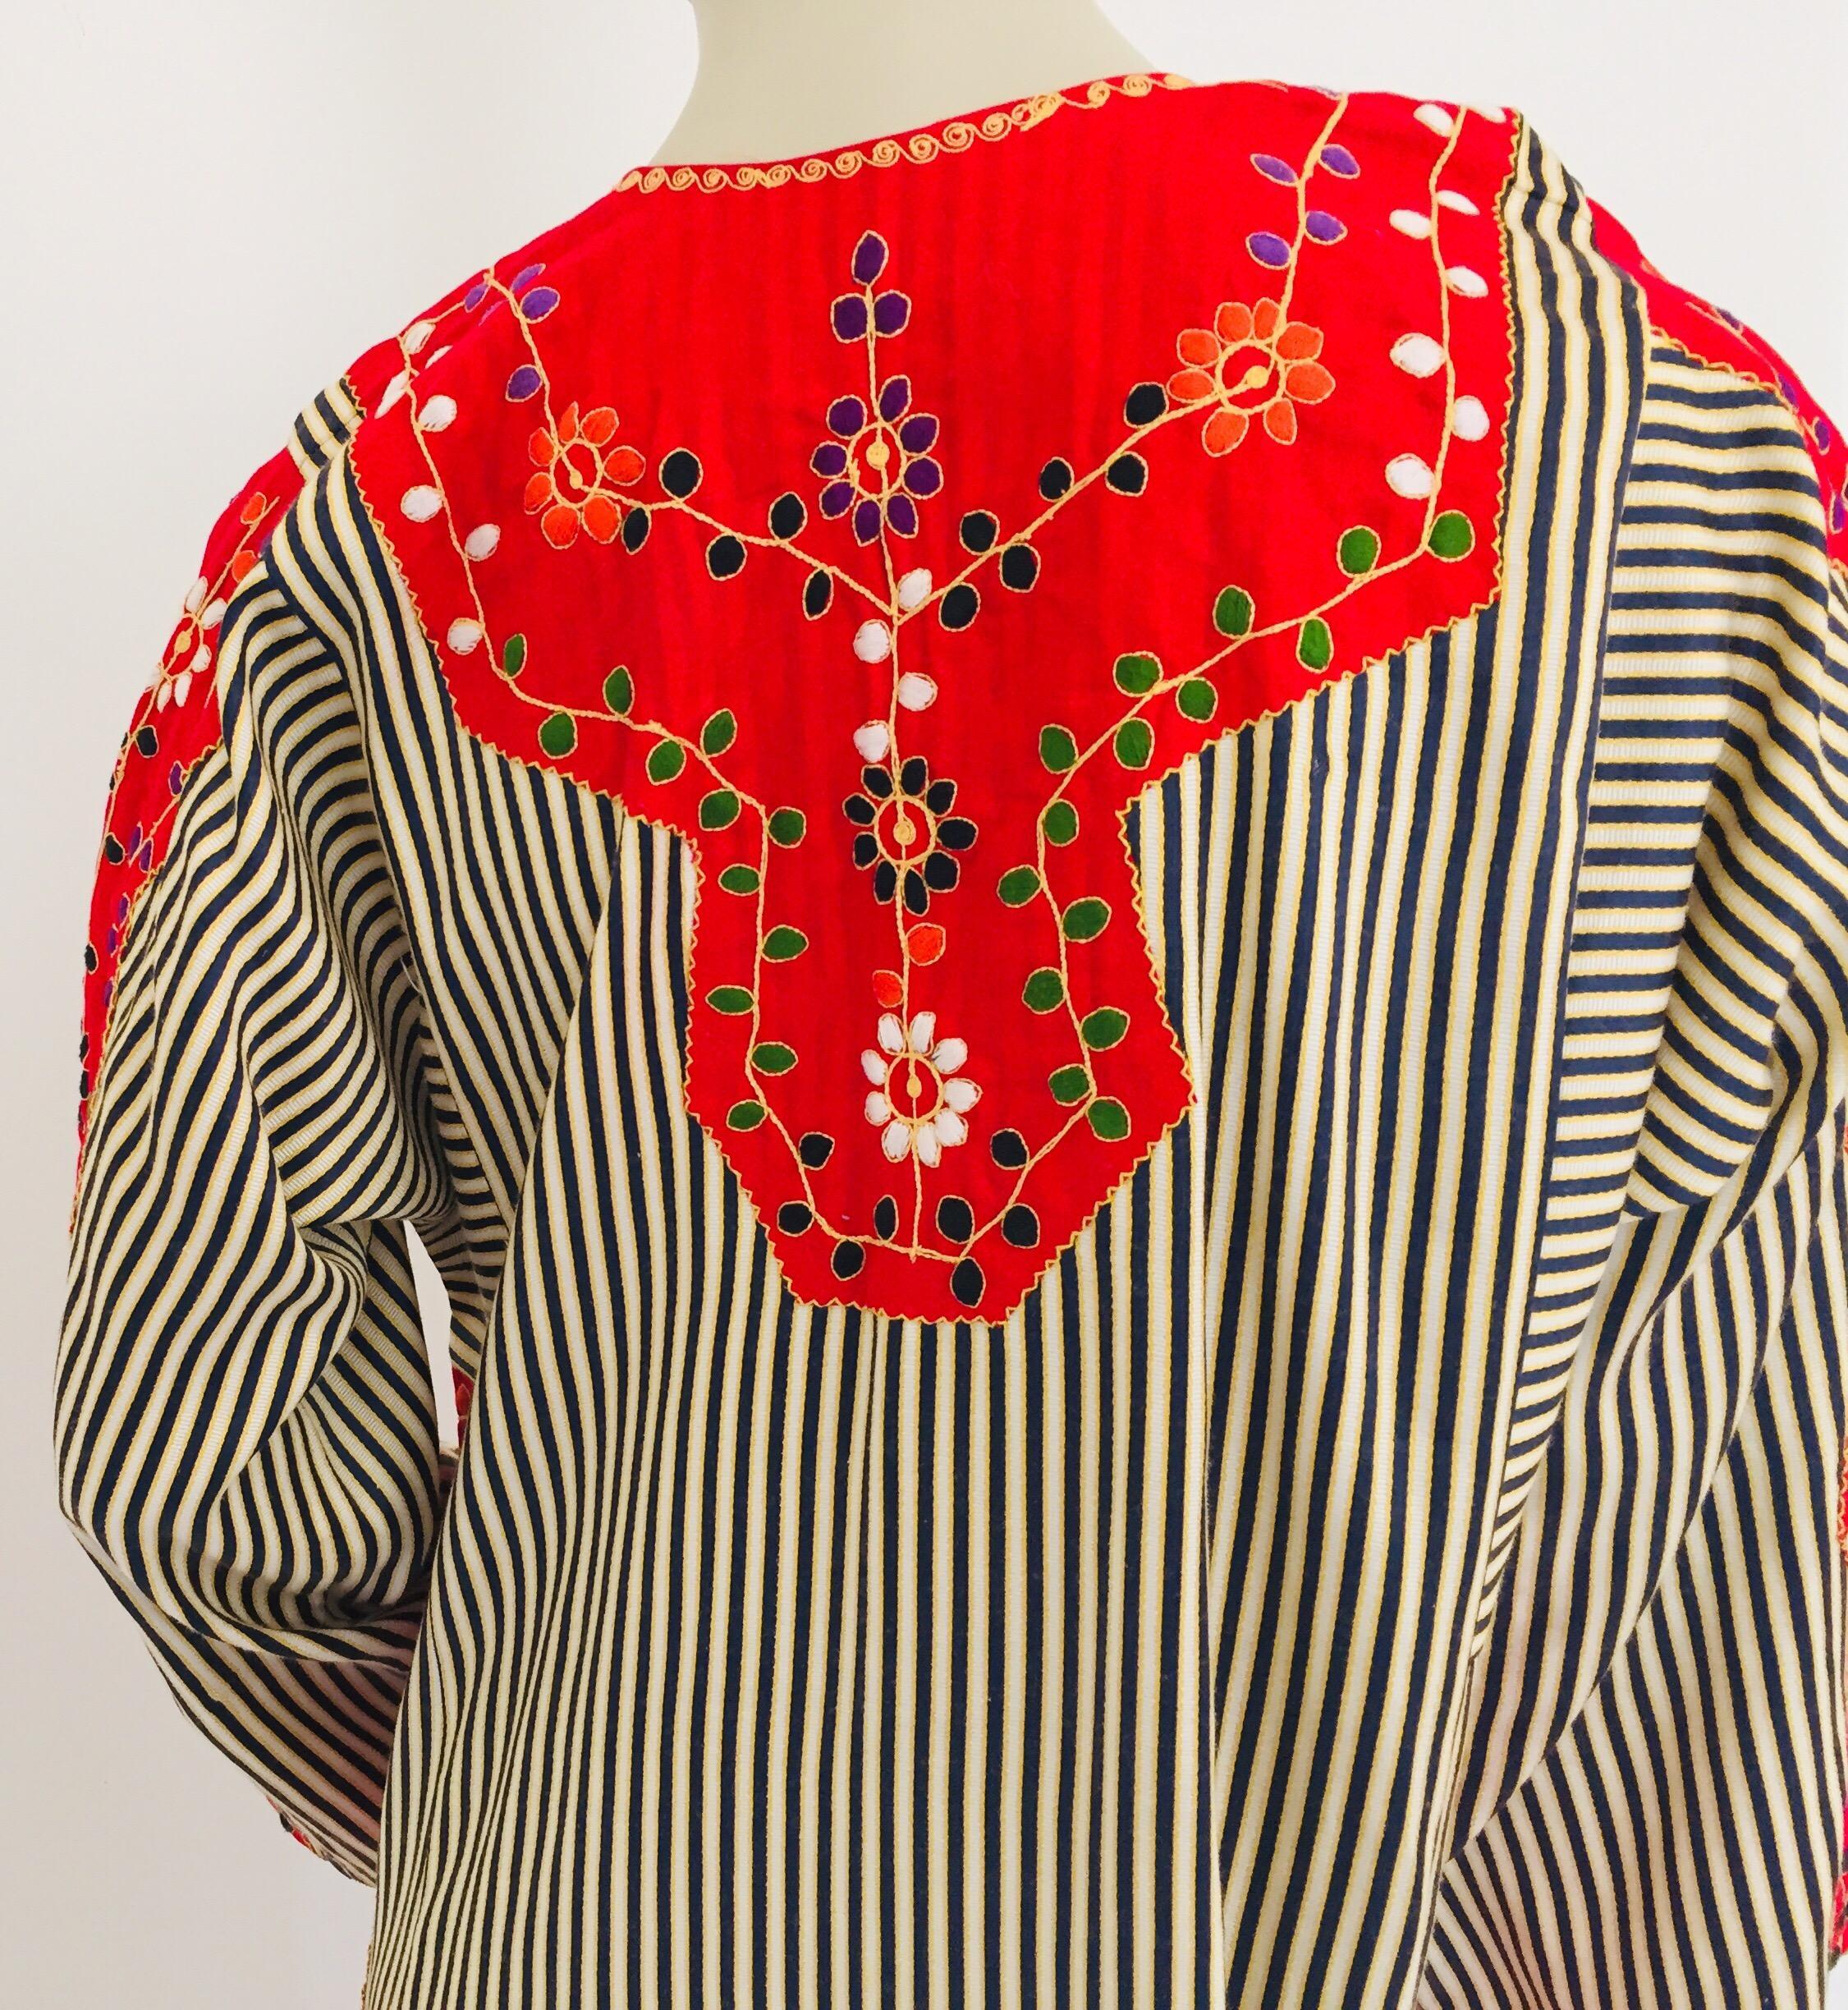 Vintage Middle Eastern Ethnic Caftan, Kaftan Maxi Dress For Sale 7